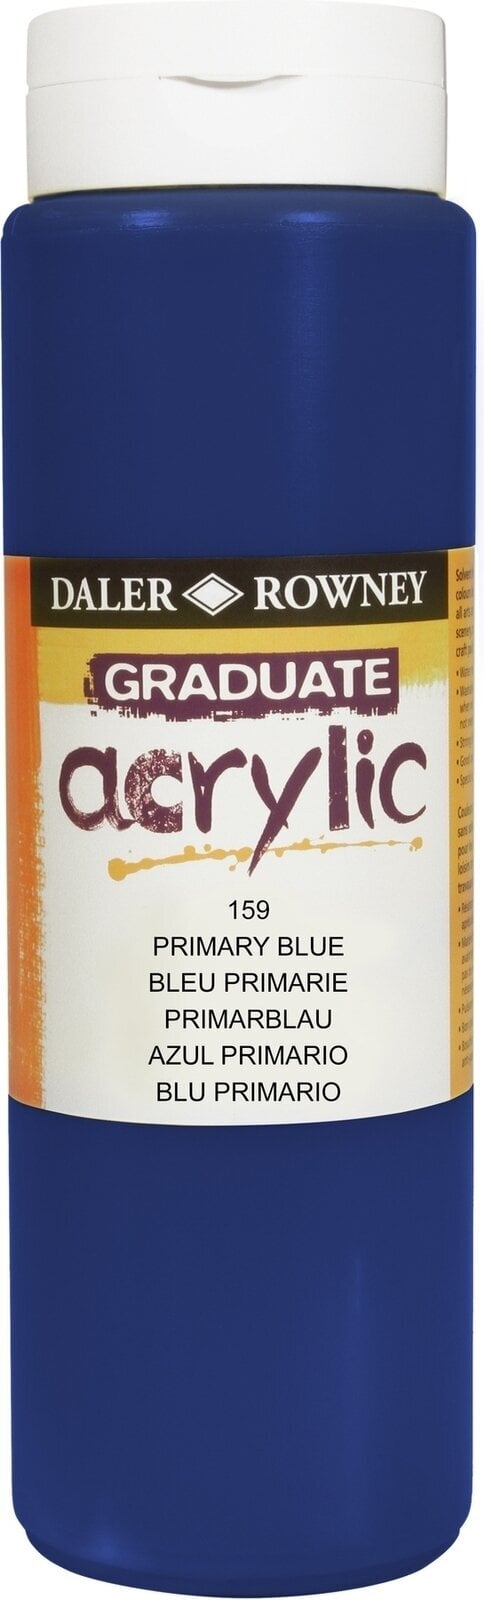 Peinture acrylique Daler Rowney Graduate Peinture acrylique Primary Blue 500 ml 1 pc